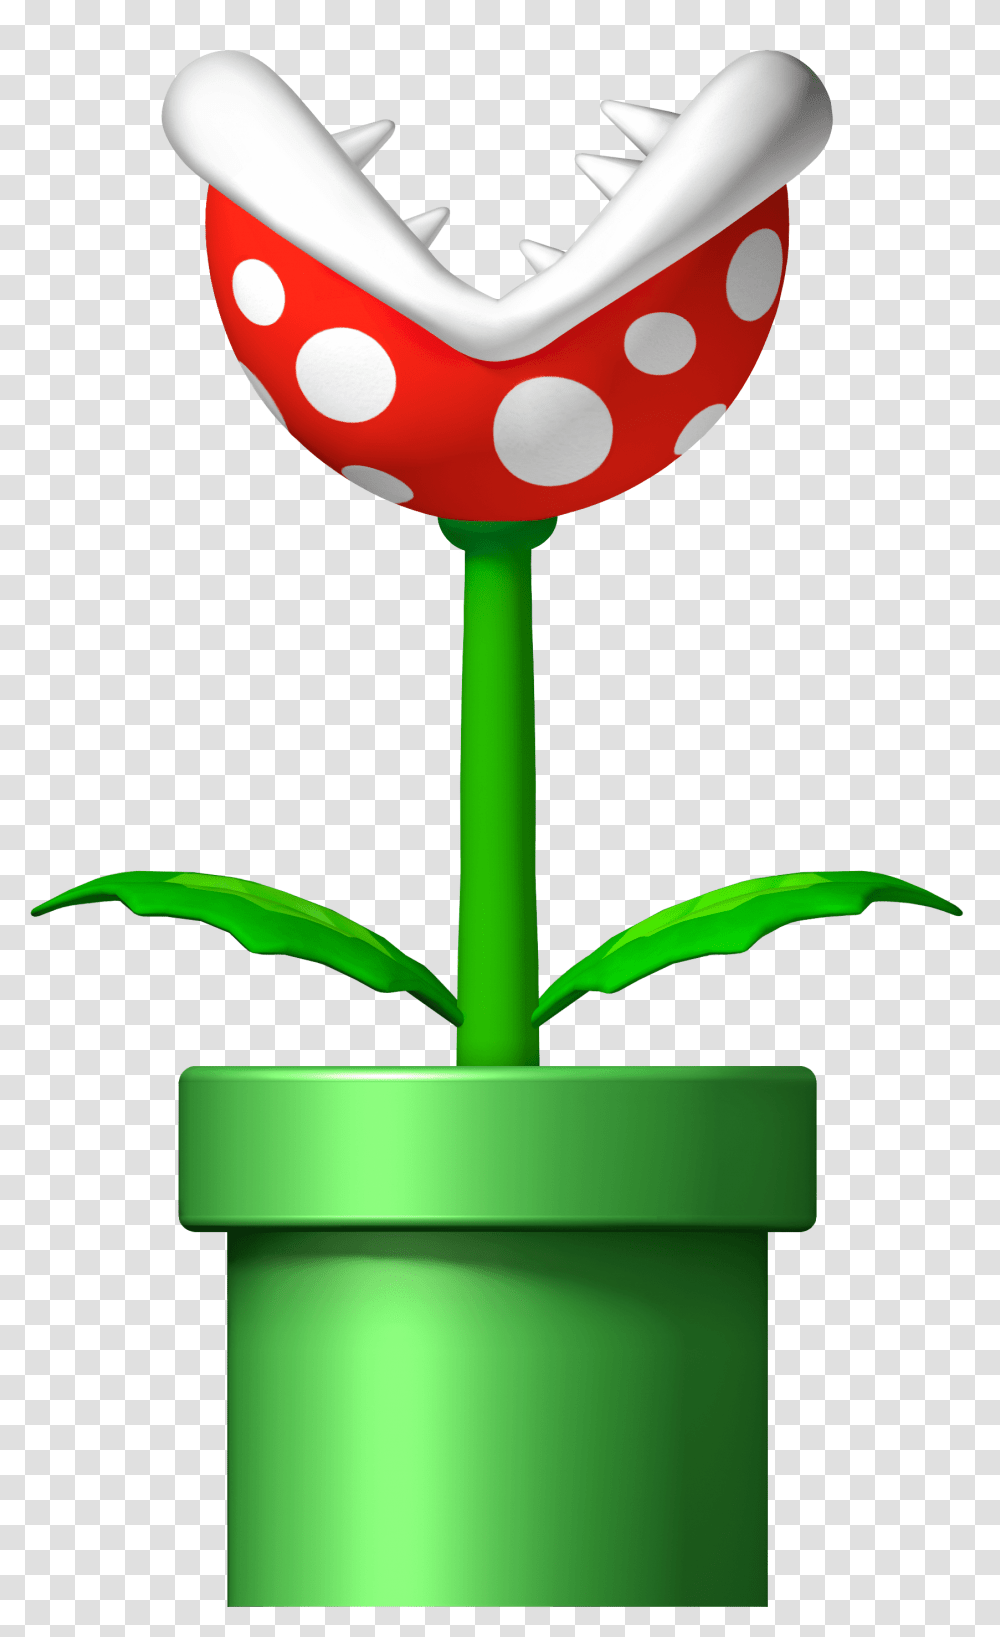 Super Mario Piranha Plant Mario Piranha Plant, Flower, Blossom, Ball, Photography Transparent Png